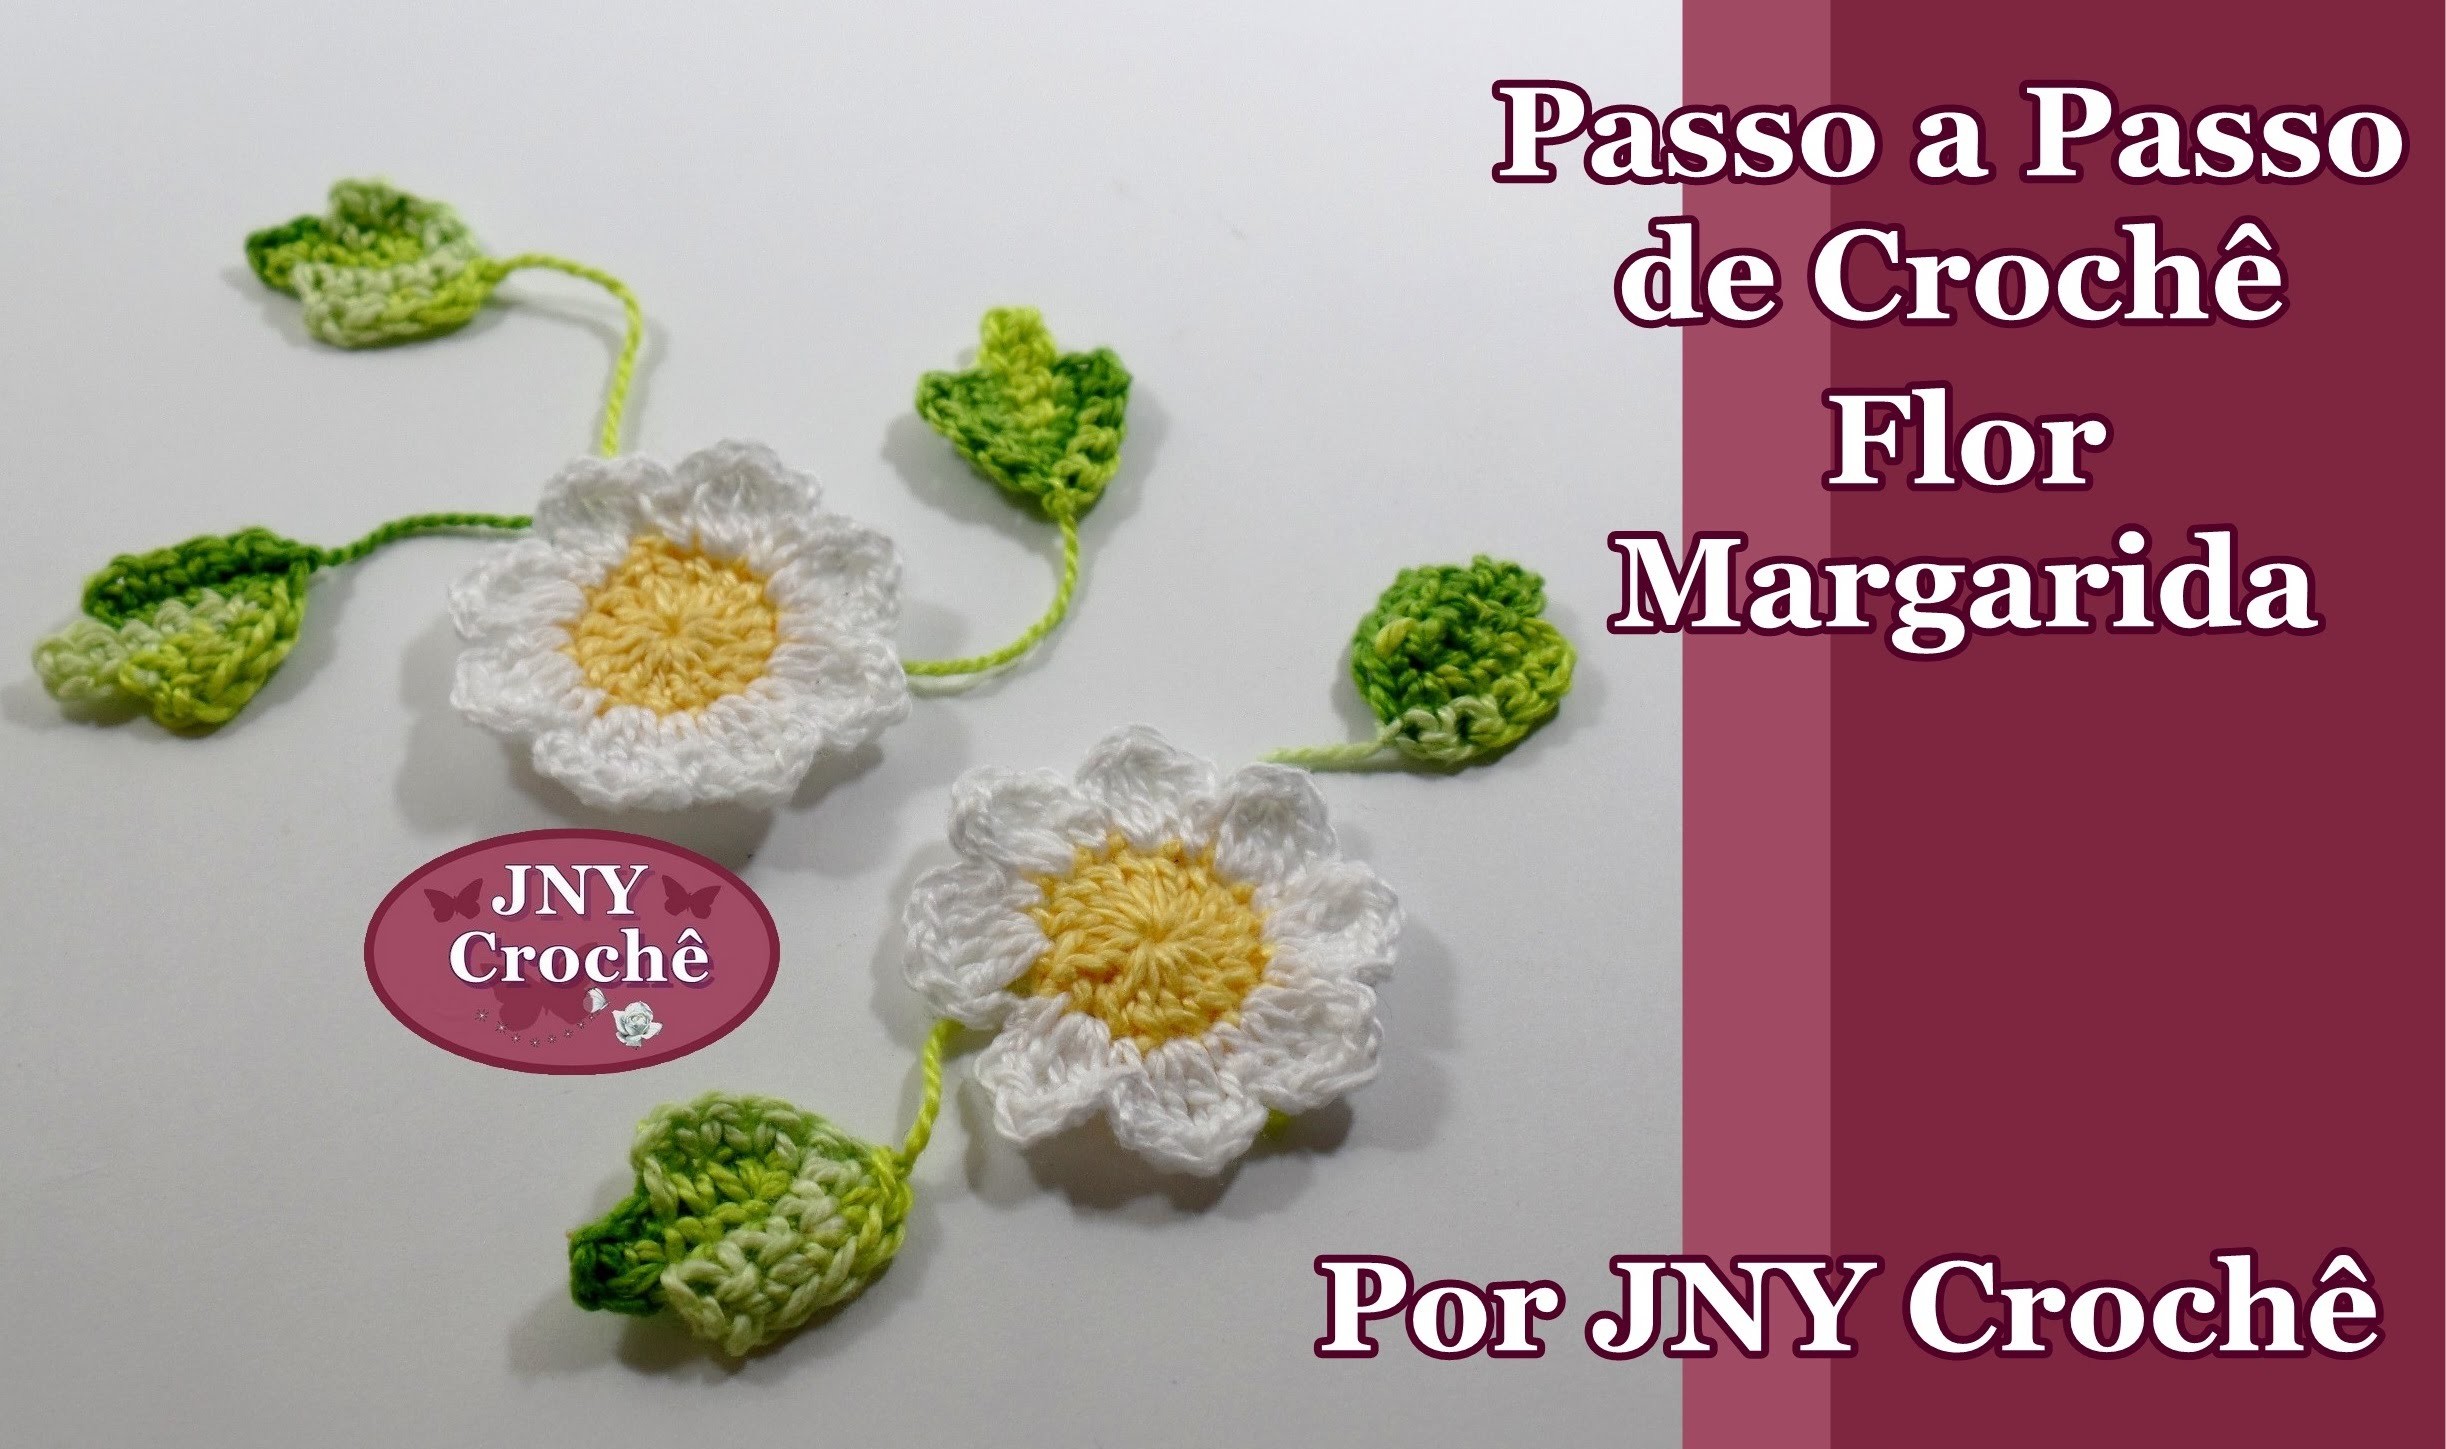 Passo a Passo Flor de Crochê Margarida para aplicação por JNY Crochê